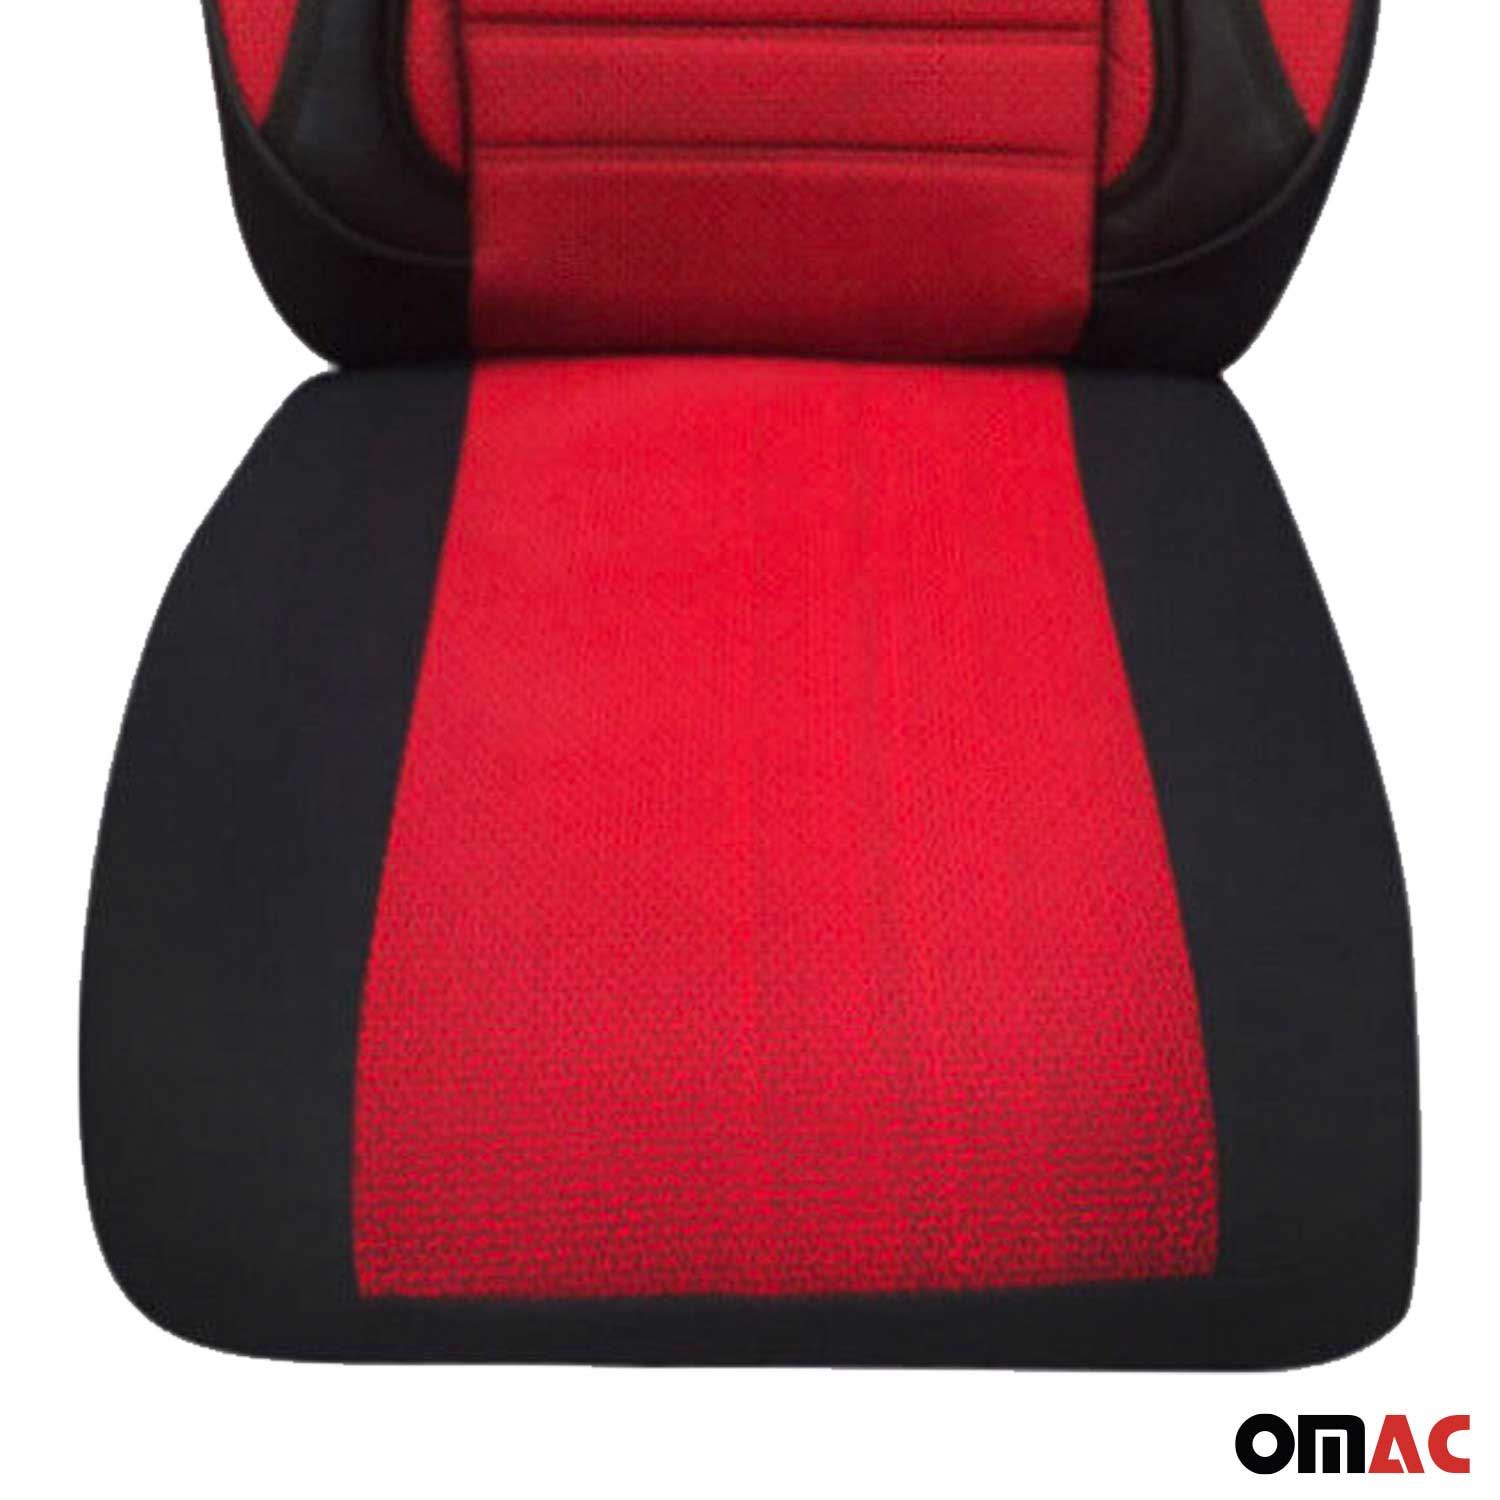 Für Kia Rio Stonic Schonbezüge Sitzbezug Schwarz Rot Vorne Satz 1+1 Auto